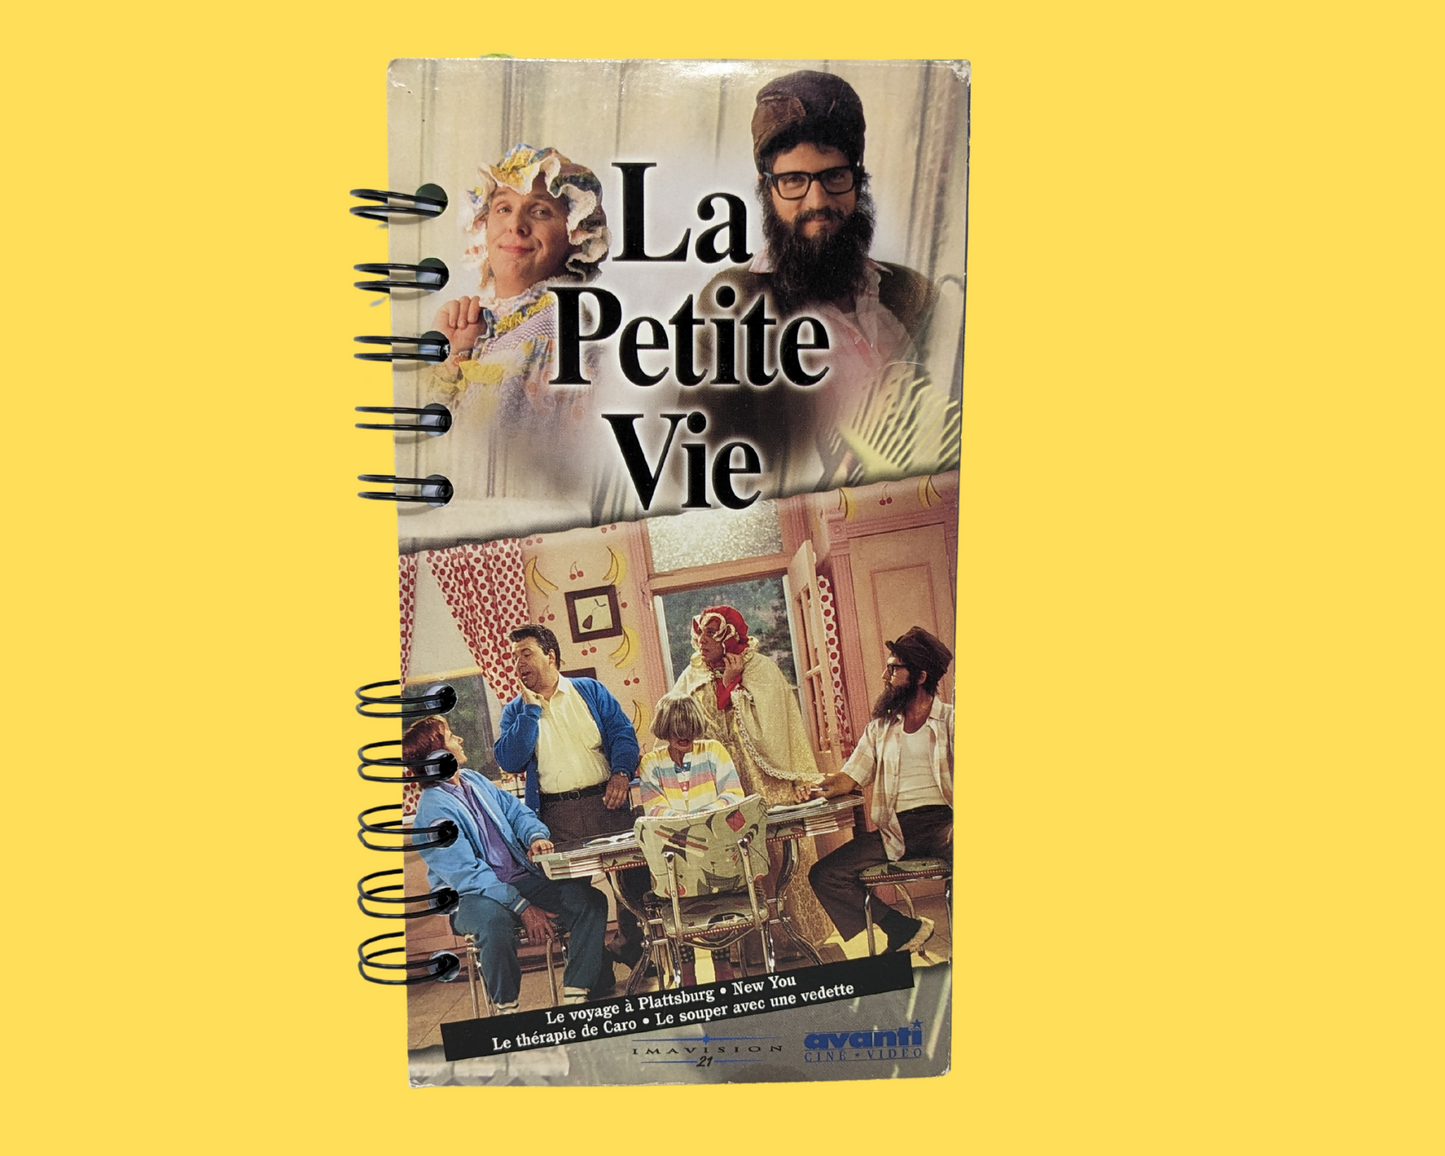 Carnet de film VHS La Petite Vie